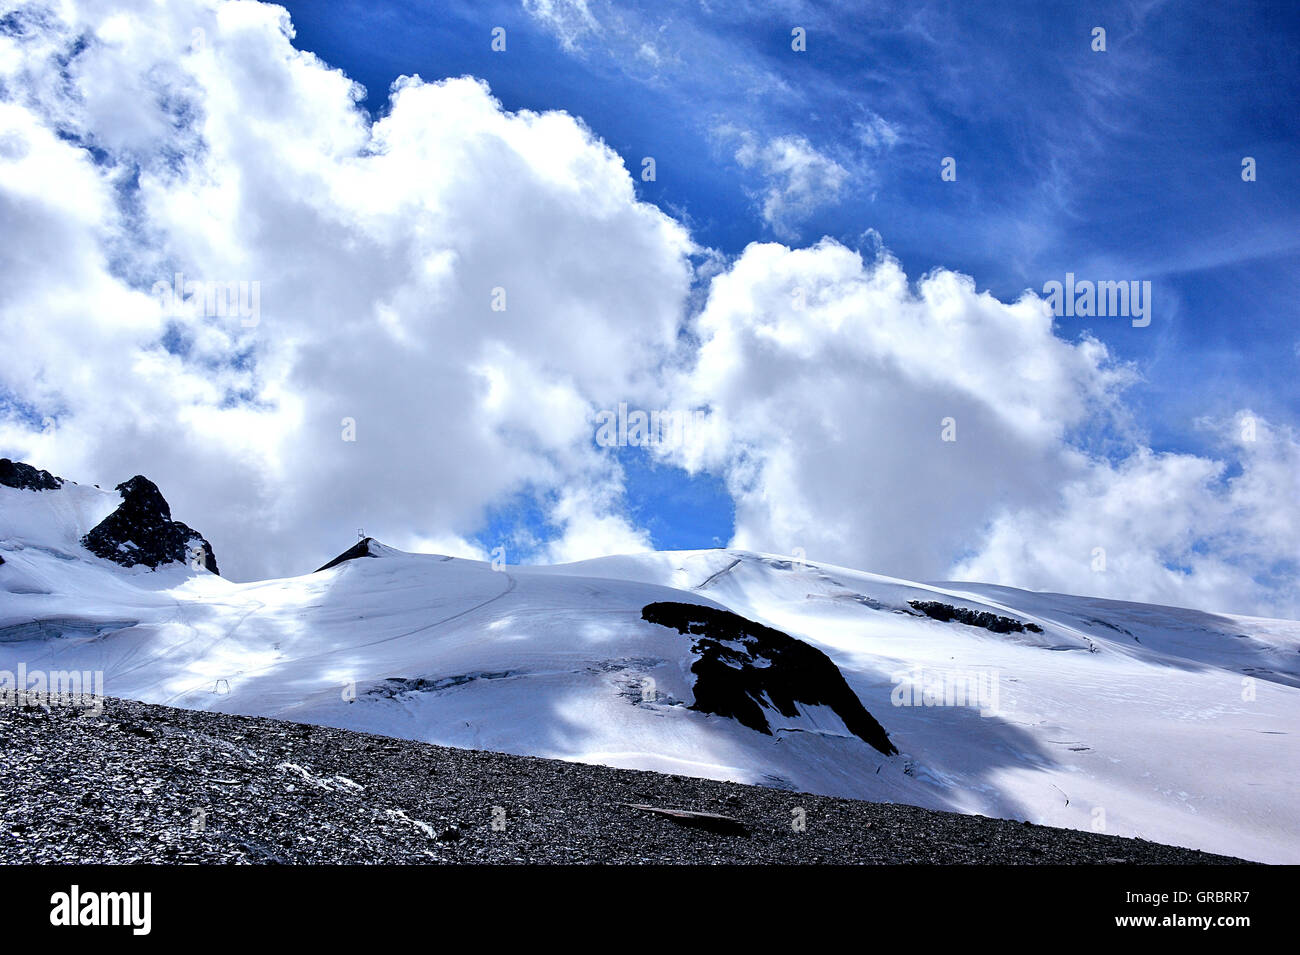 Skigebiet auf einer Gletscherlandschaft, La Meije, Französische Alpen, Frankreich Stockfoto